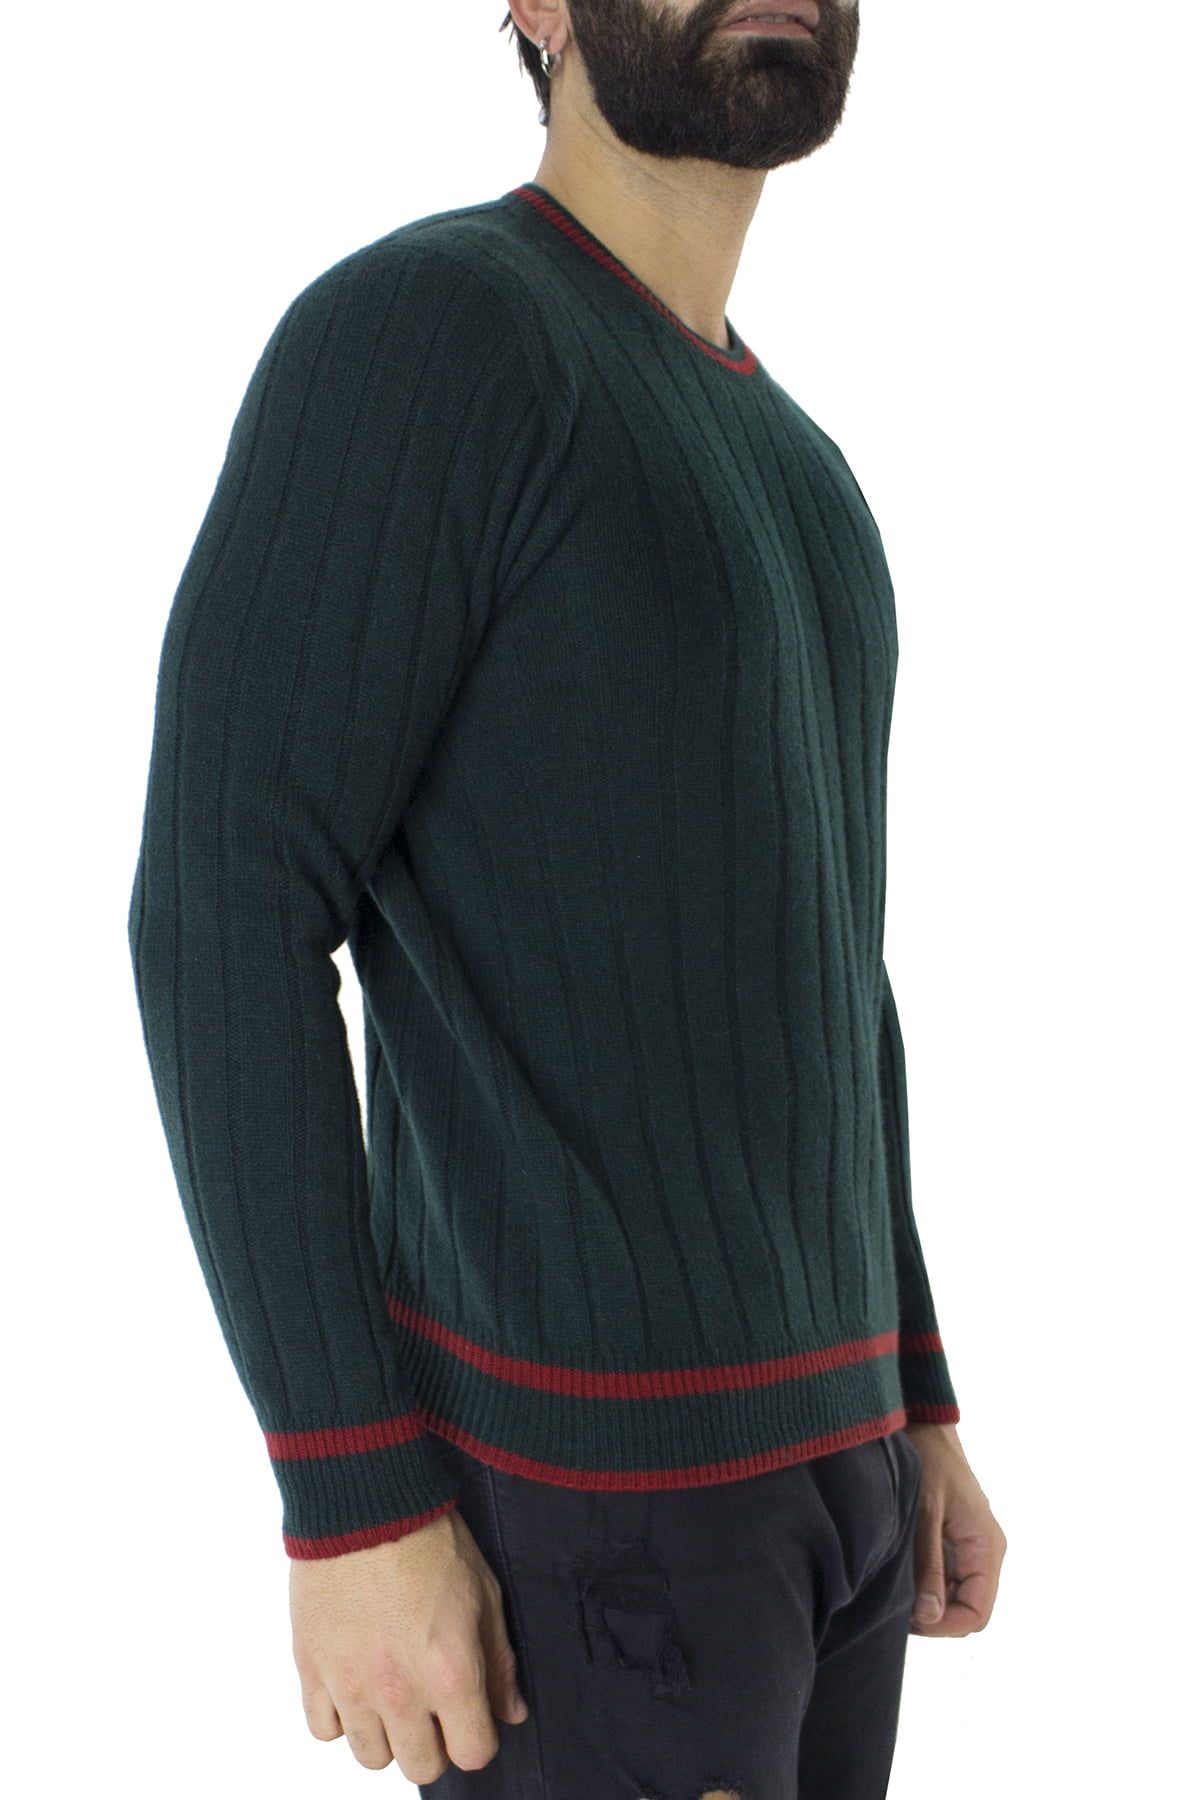 Maglione uomo Girocollo verde a coste in lana merinos con bordini rossi slim fit made in italy